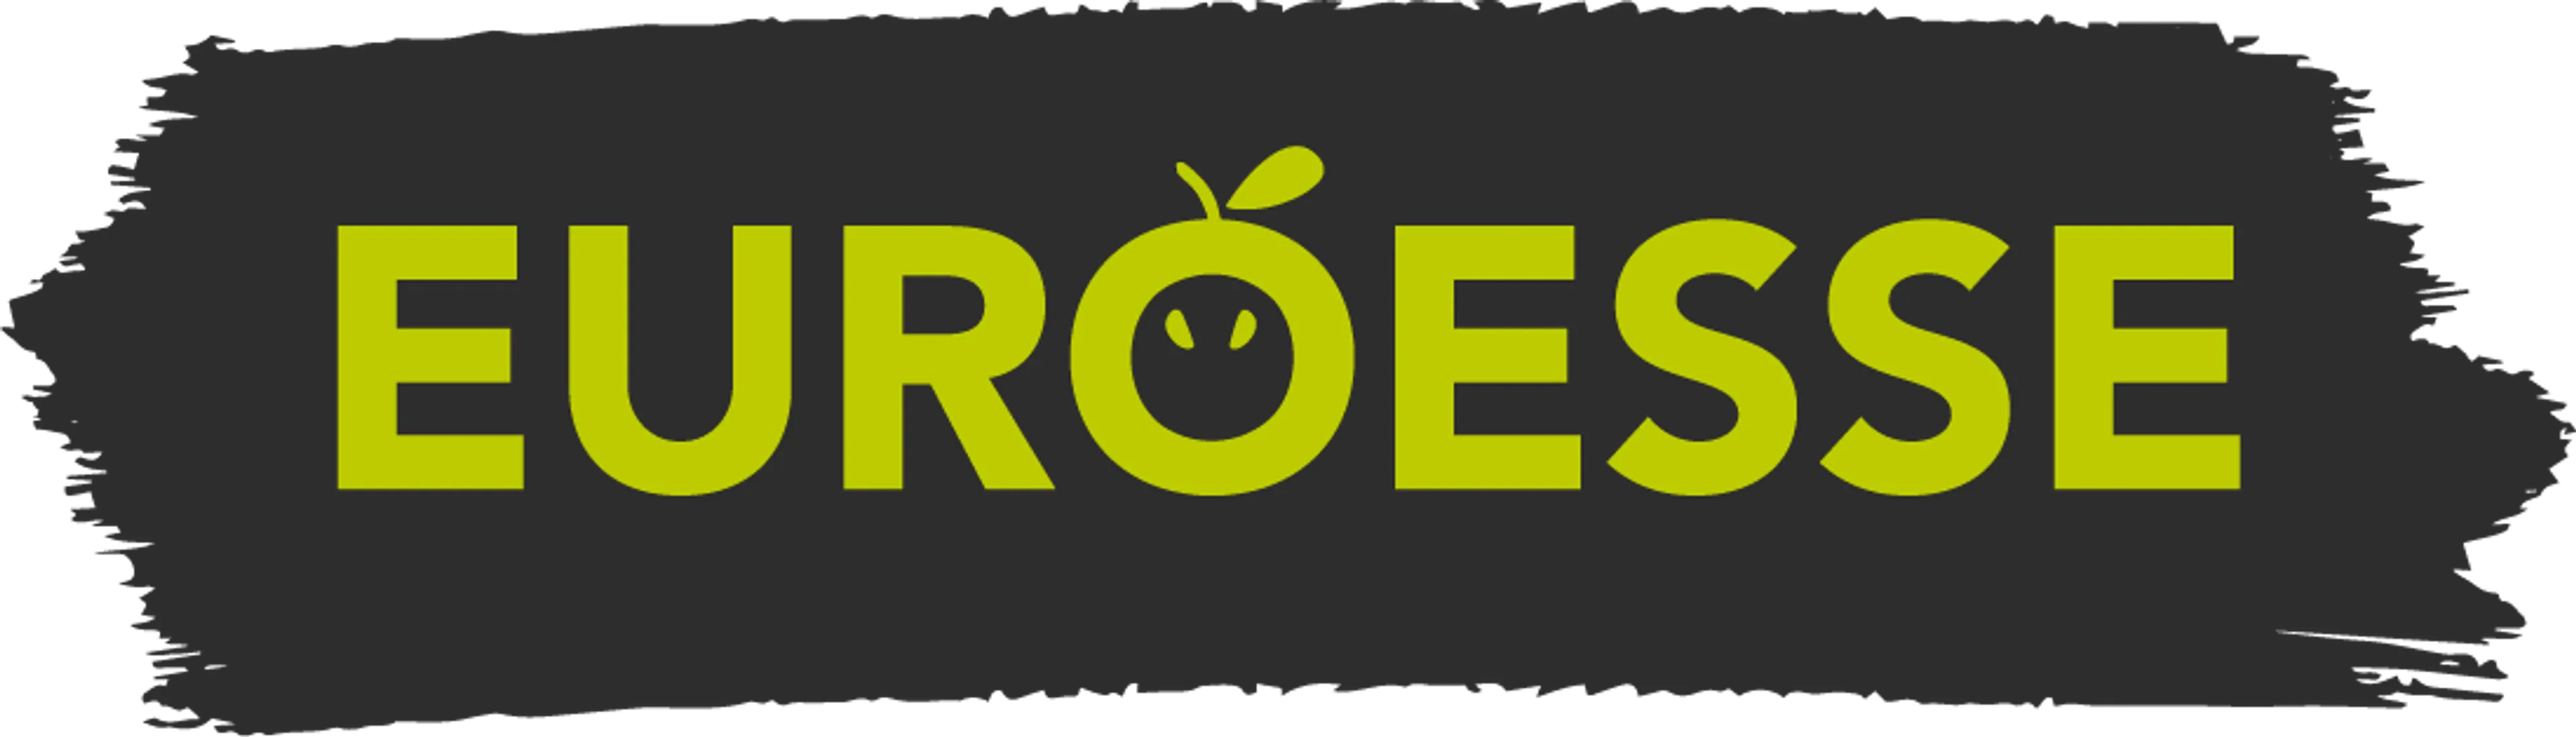 EUROESSE logo